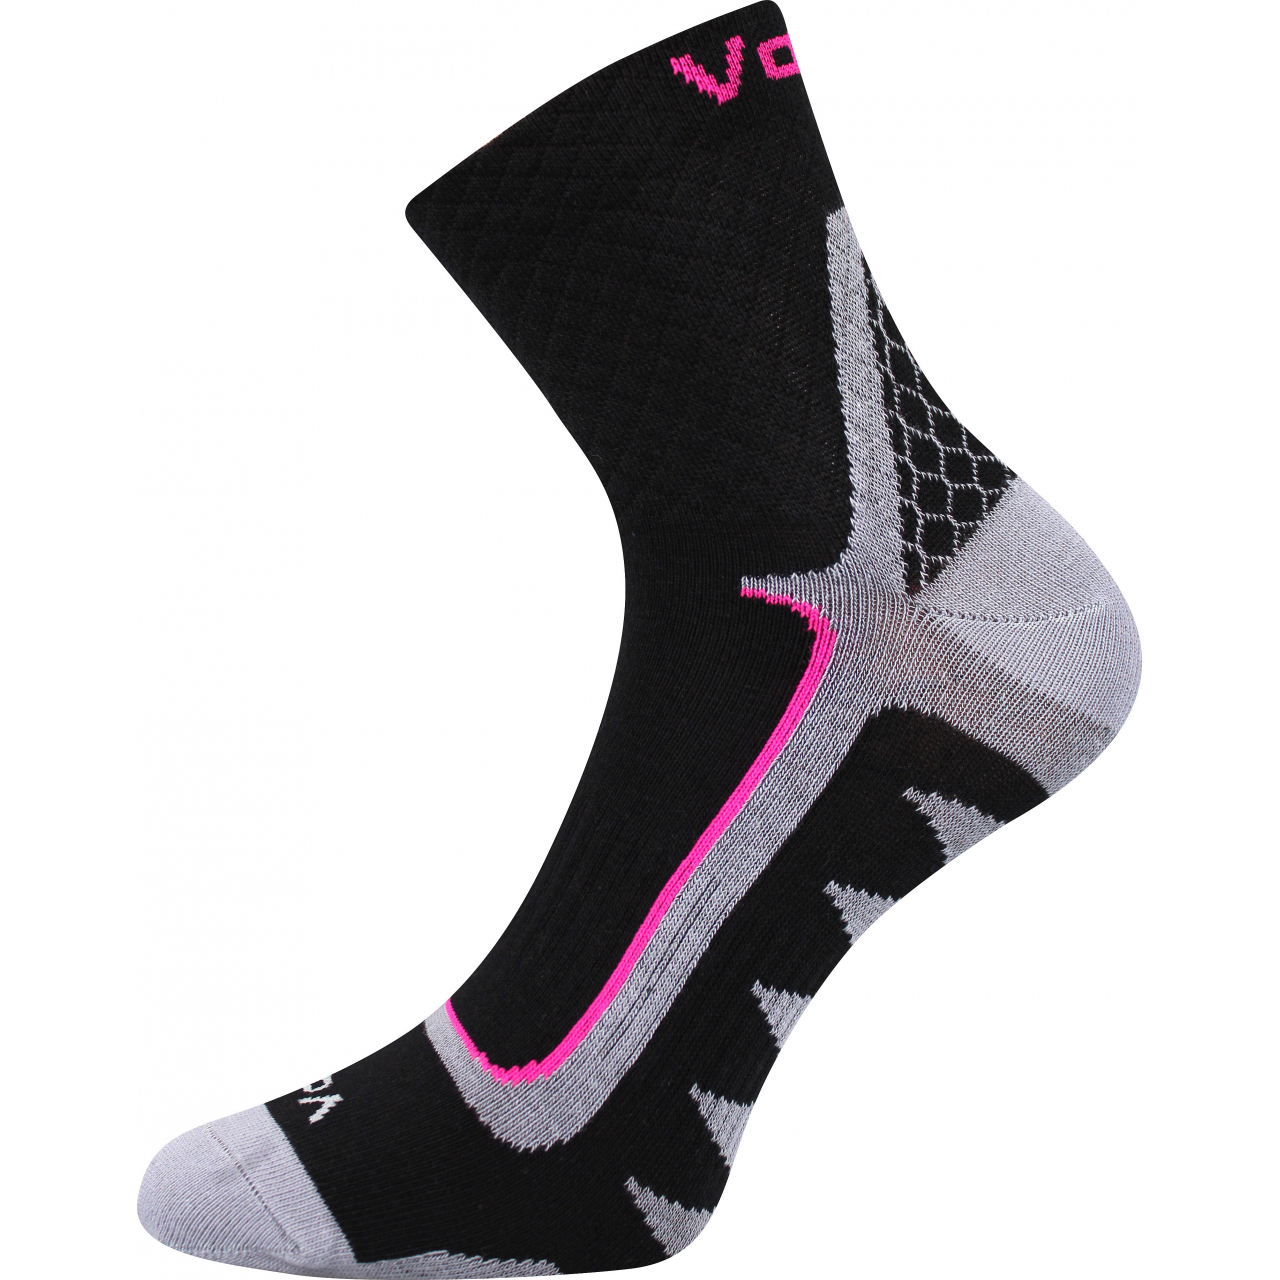 Ponožky sportovní unisex Voxx Kryptox - černé-růžové, 39-42